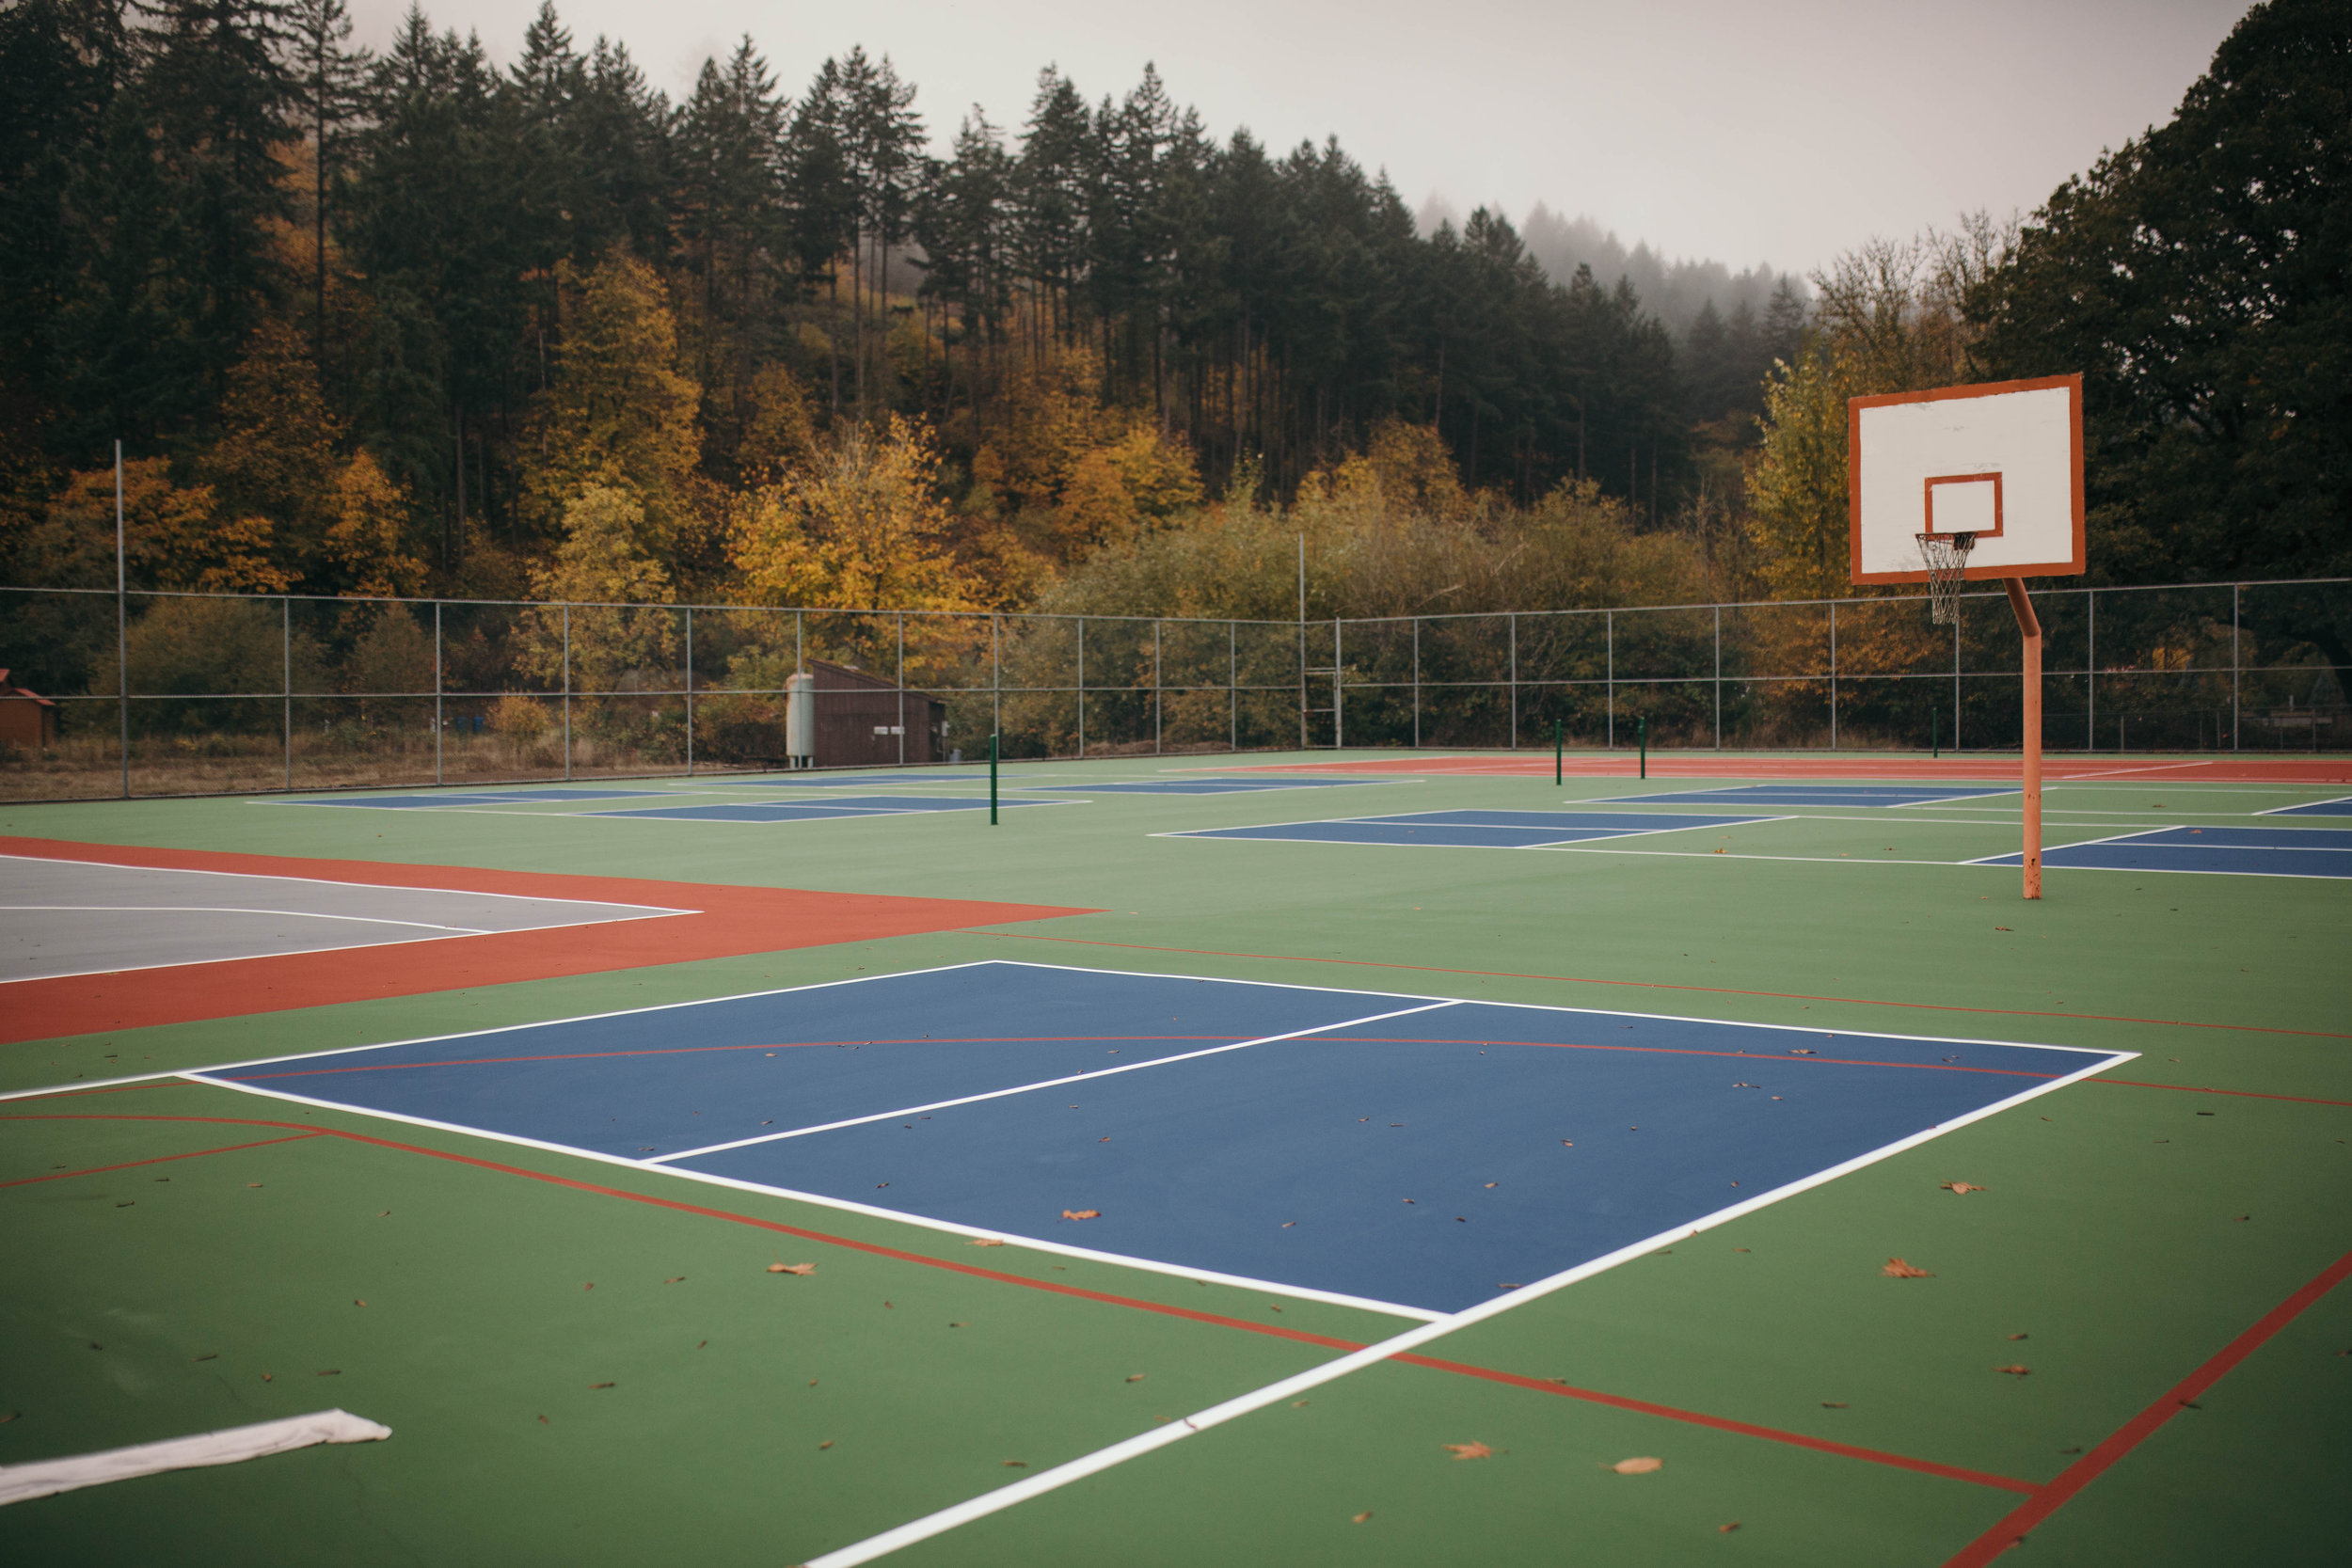 Basket Ball CouBasket Ball Court Near Hope Valley Resort Near Hope Valley Resort